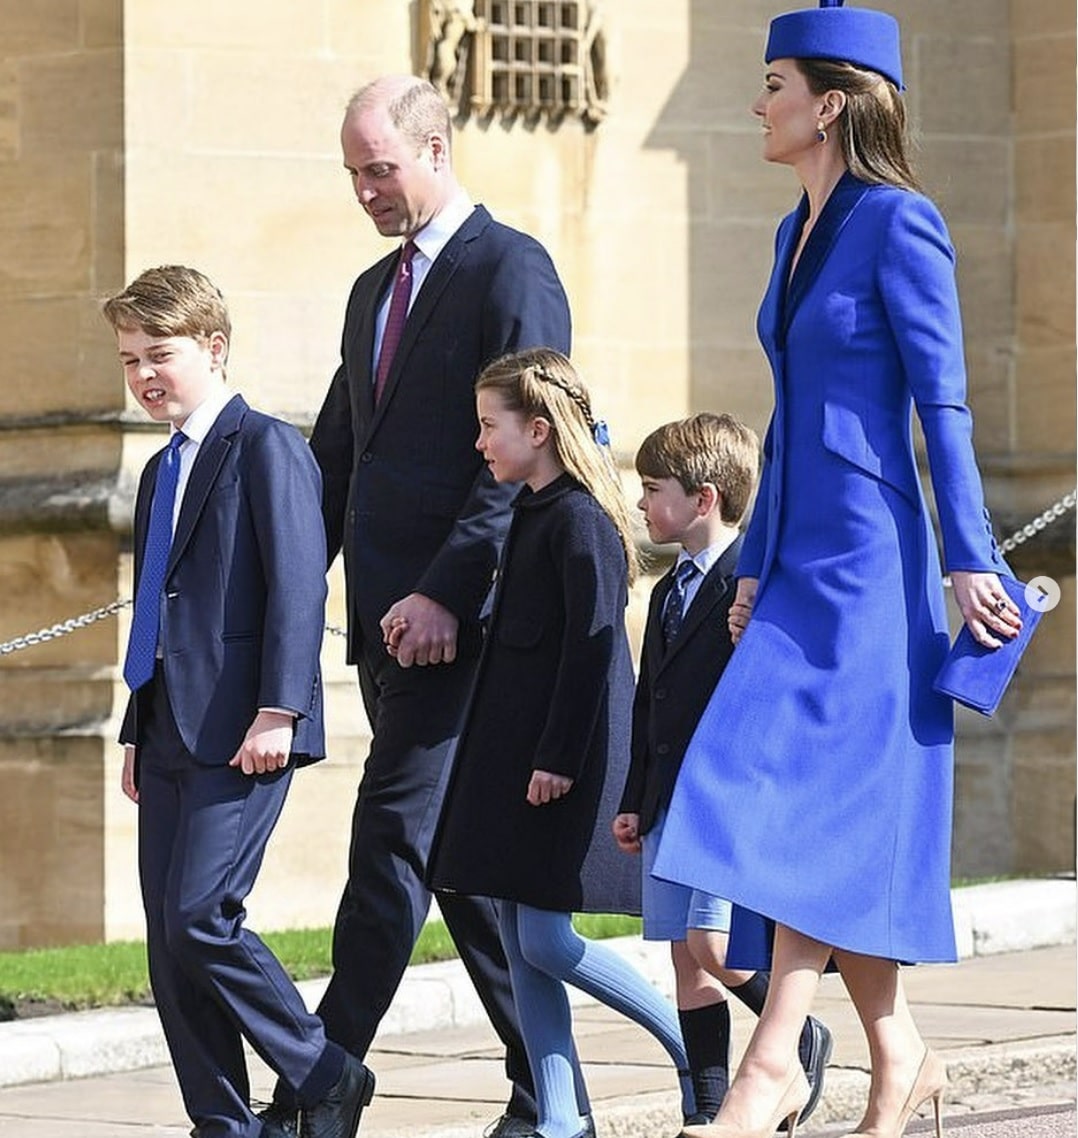 Prințul Louis a împlinit vârsta de 6 ani. Fotografia publicată de Kate Middleton, așteptată de toată lumea: "Vă mulțumim pentru urări" 